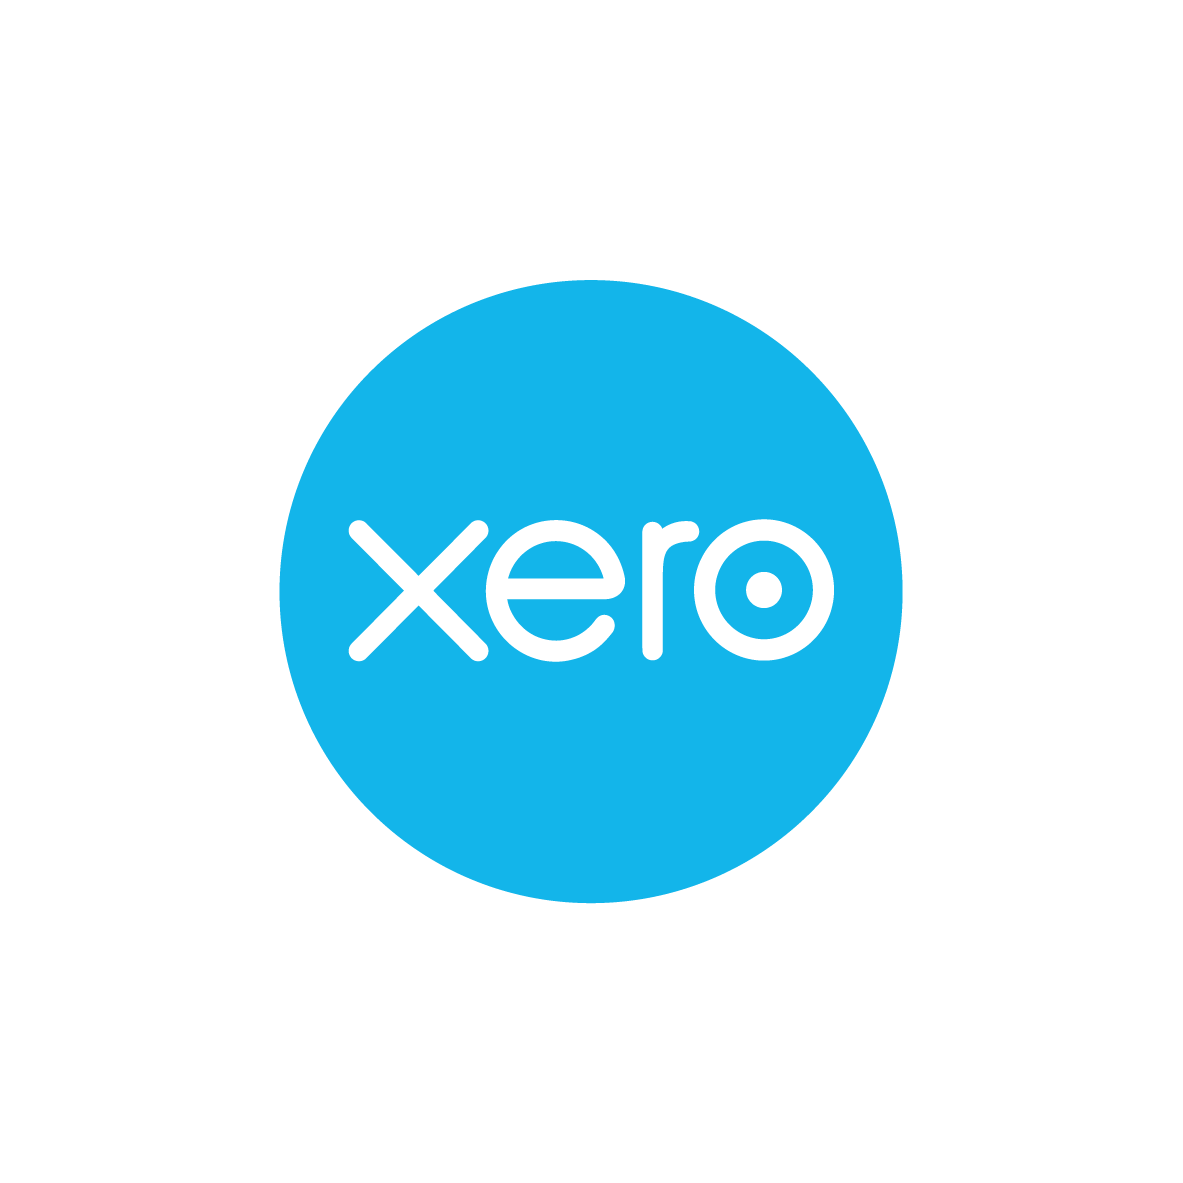 Xero Onsite Training - 1 hour slots